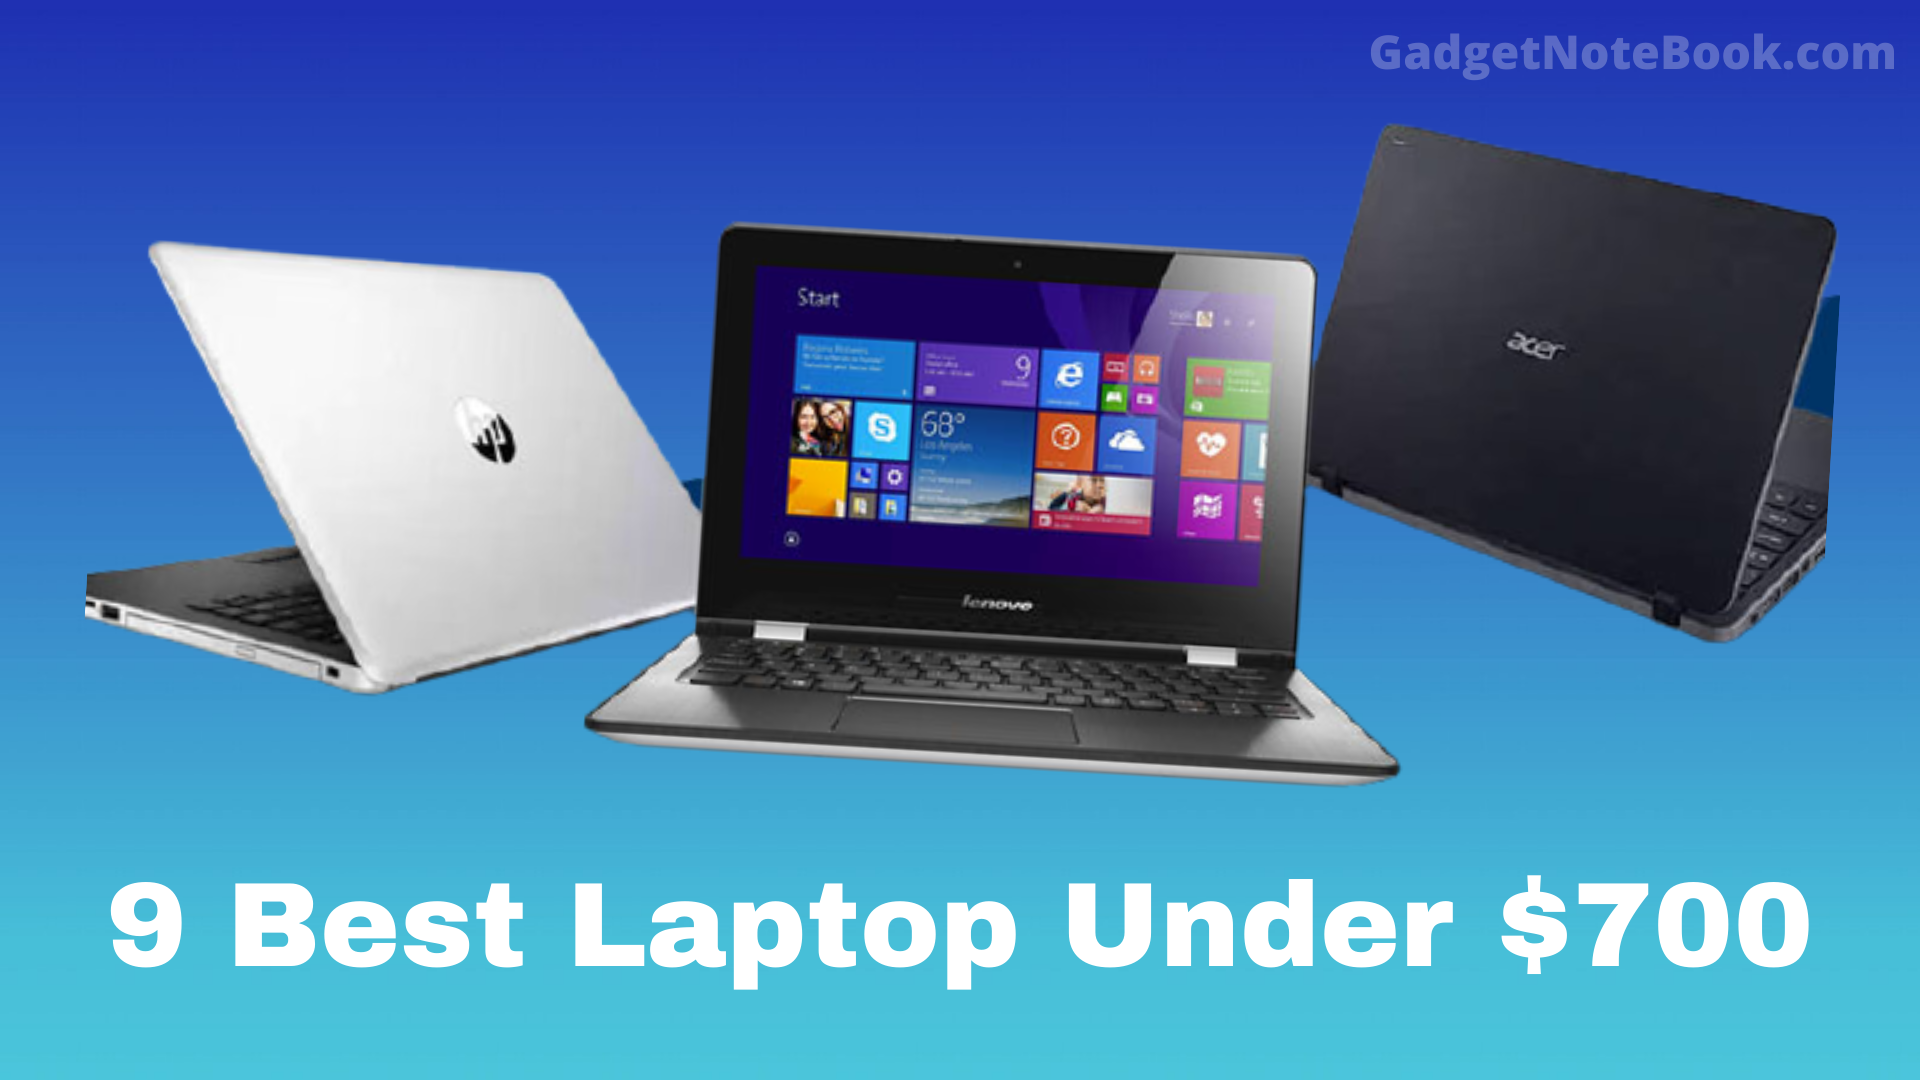 9 Best Laptop Under $700